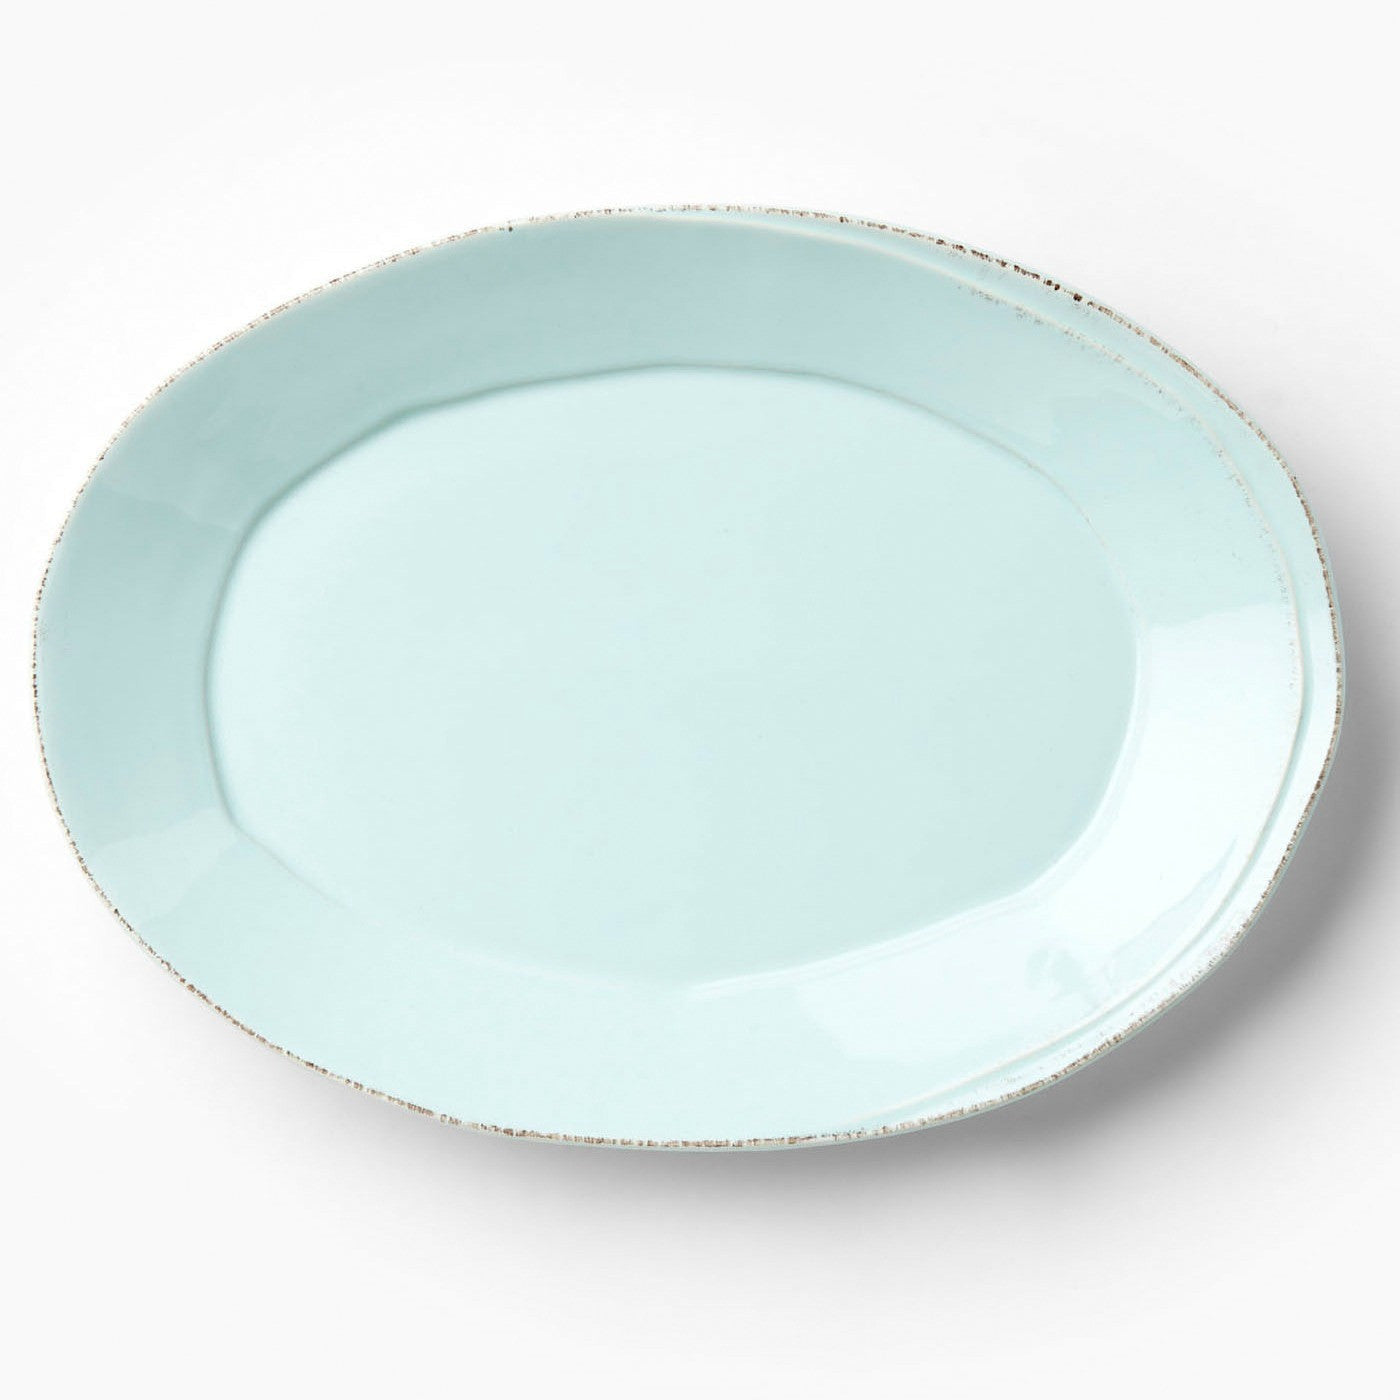 VIETRI: Lastra Aqua Oval Platter - Artistica.com